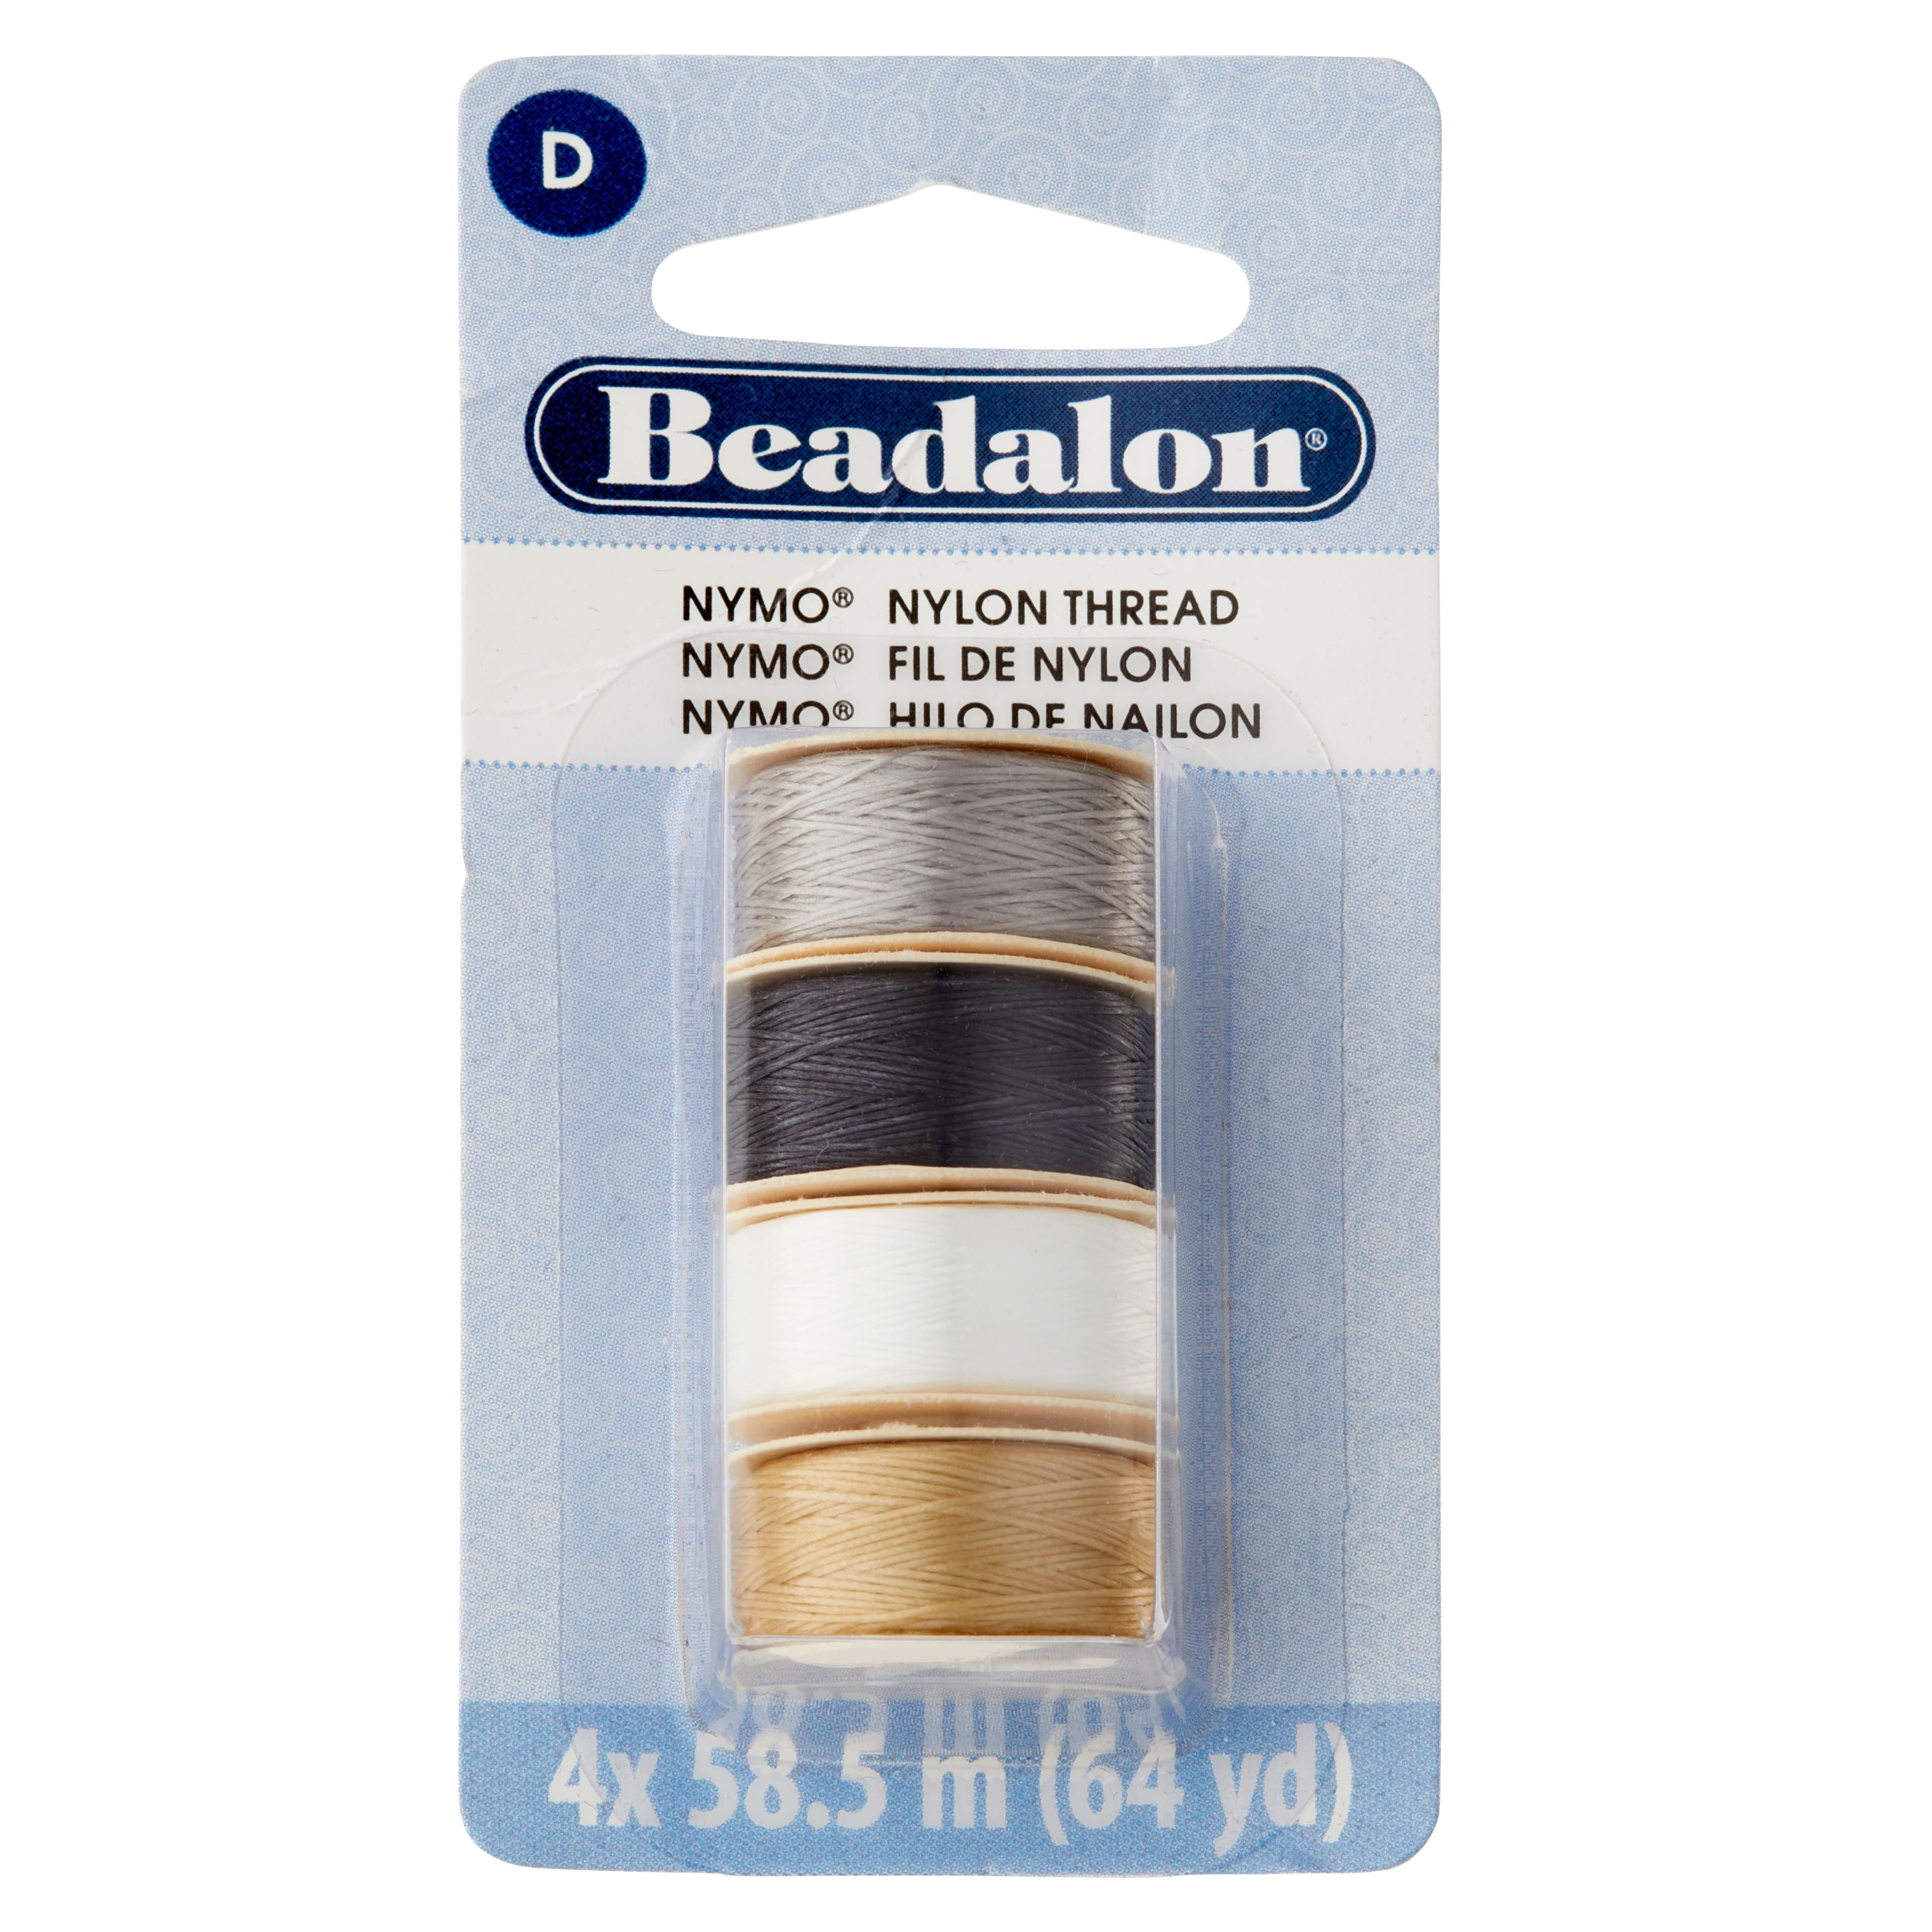 Beadalon® Nymo® Nylon Thread, Earth Tone